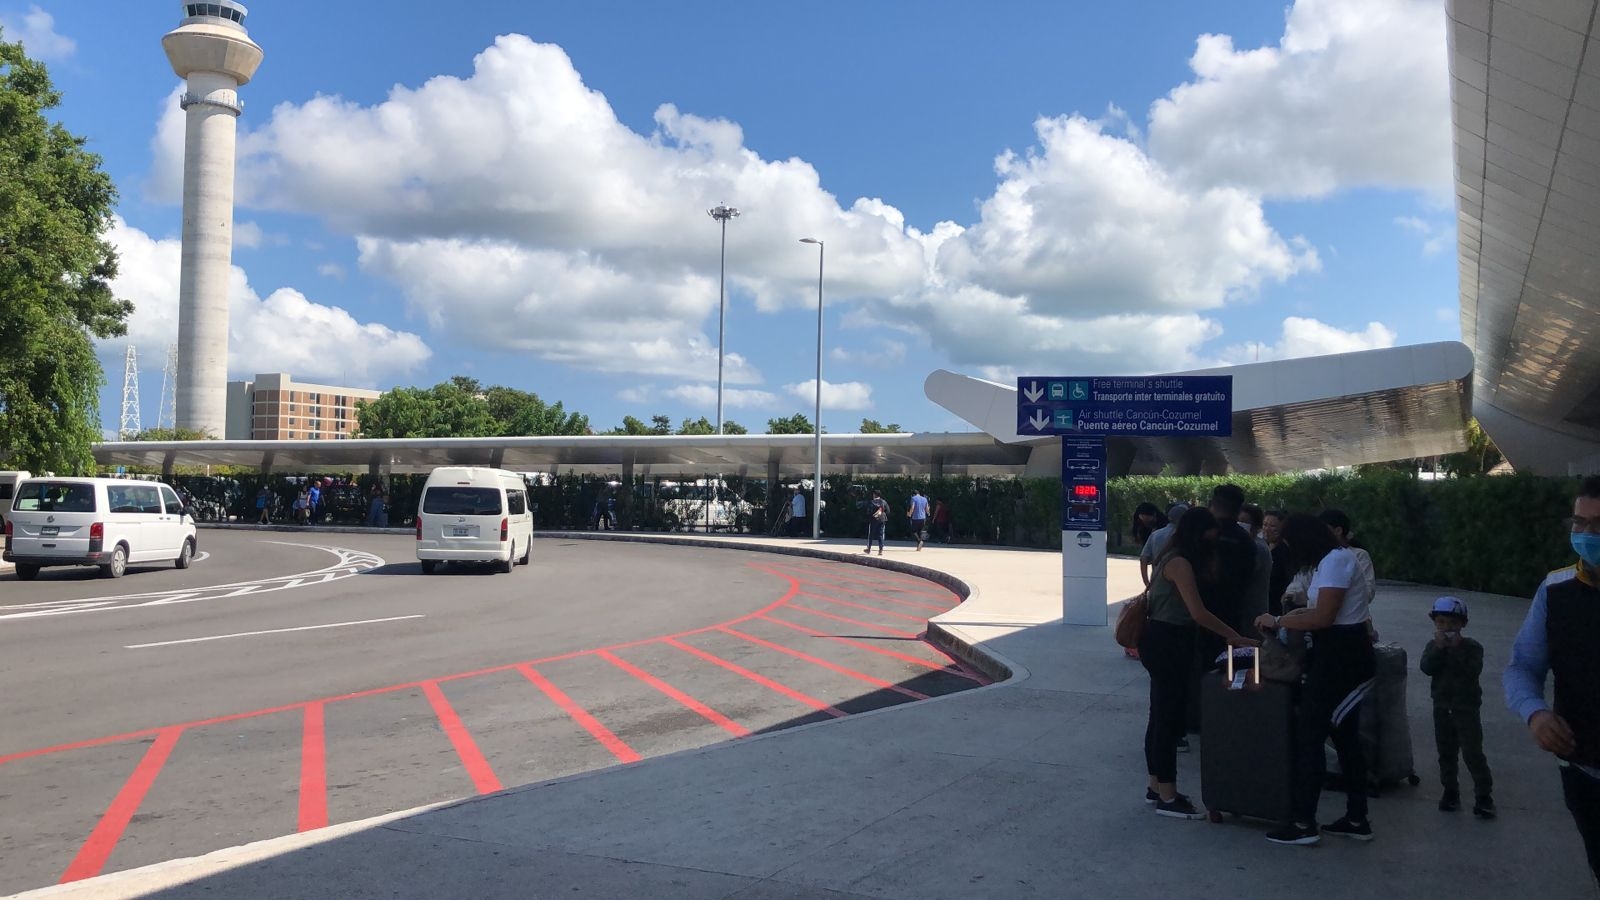 El aeropuerto de Cancún tendrá 359 llegadas a sus terminales, según reportes de Asur